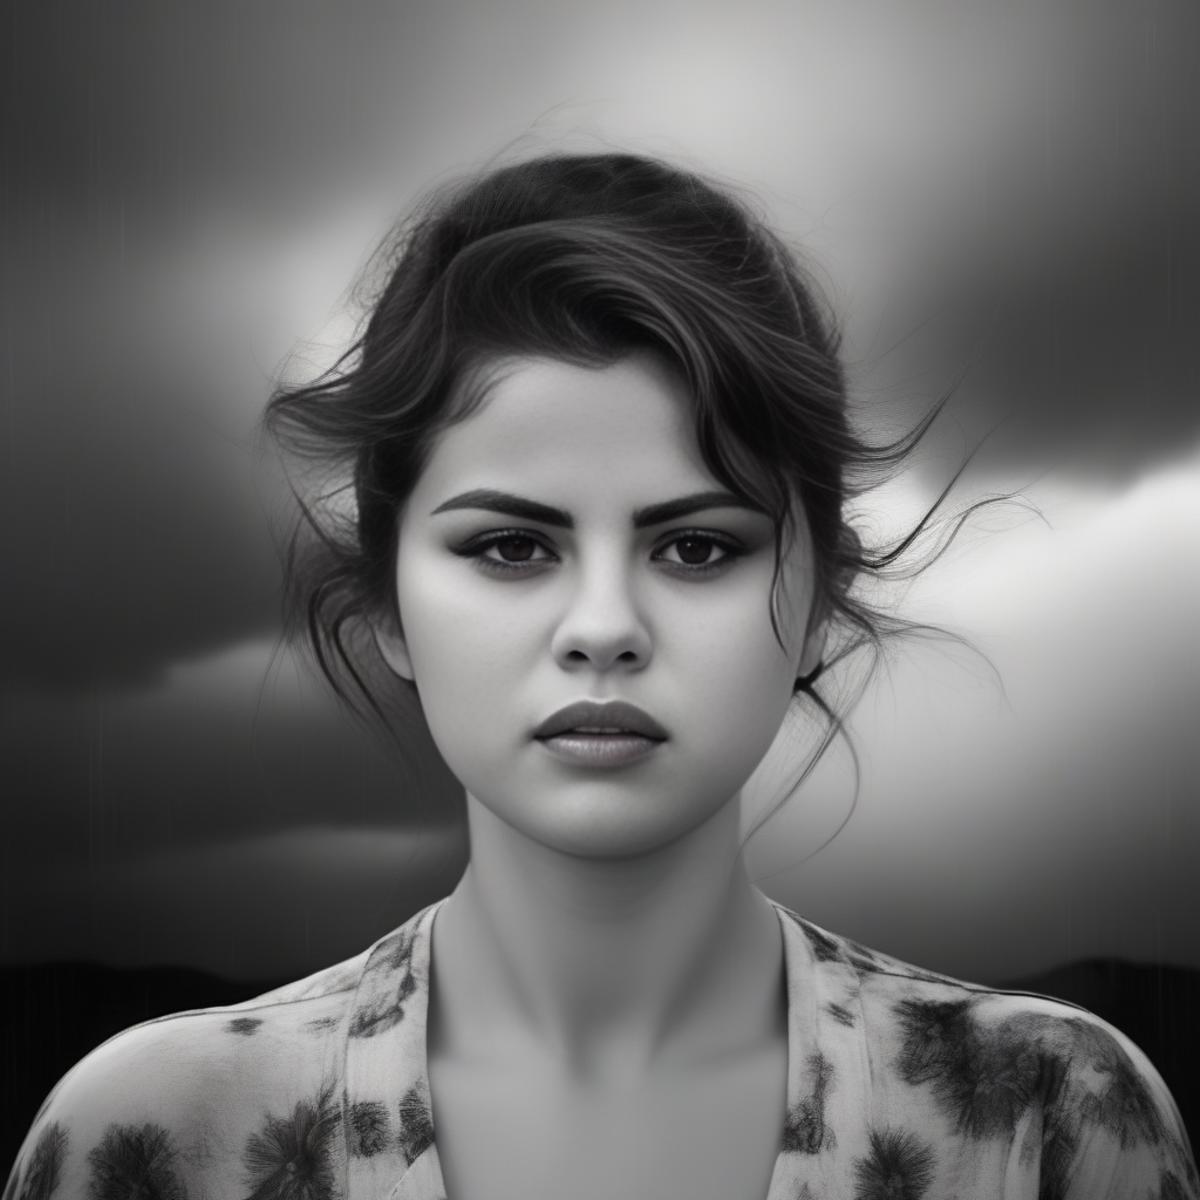 Selena Gomez image by parar20